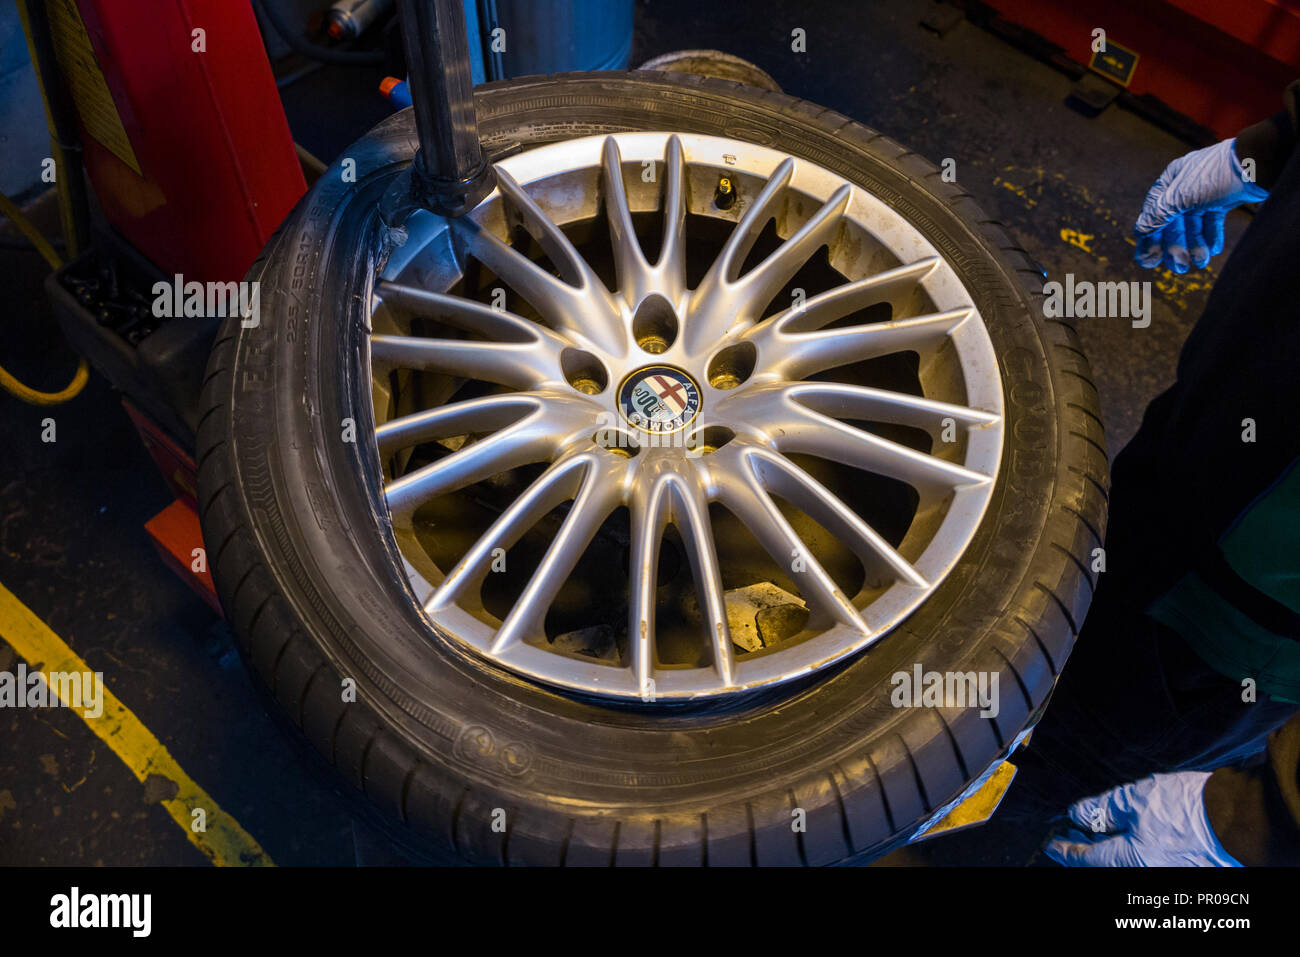 Reifen Monteur/Mechaniker Montage/einen neuen Reifen (Goodyear) auf einem  Auto / PKW Rad/Räder Leichtmetallfelge mit einer Maschine. UK. (102  Stockfotografie - Alamy